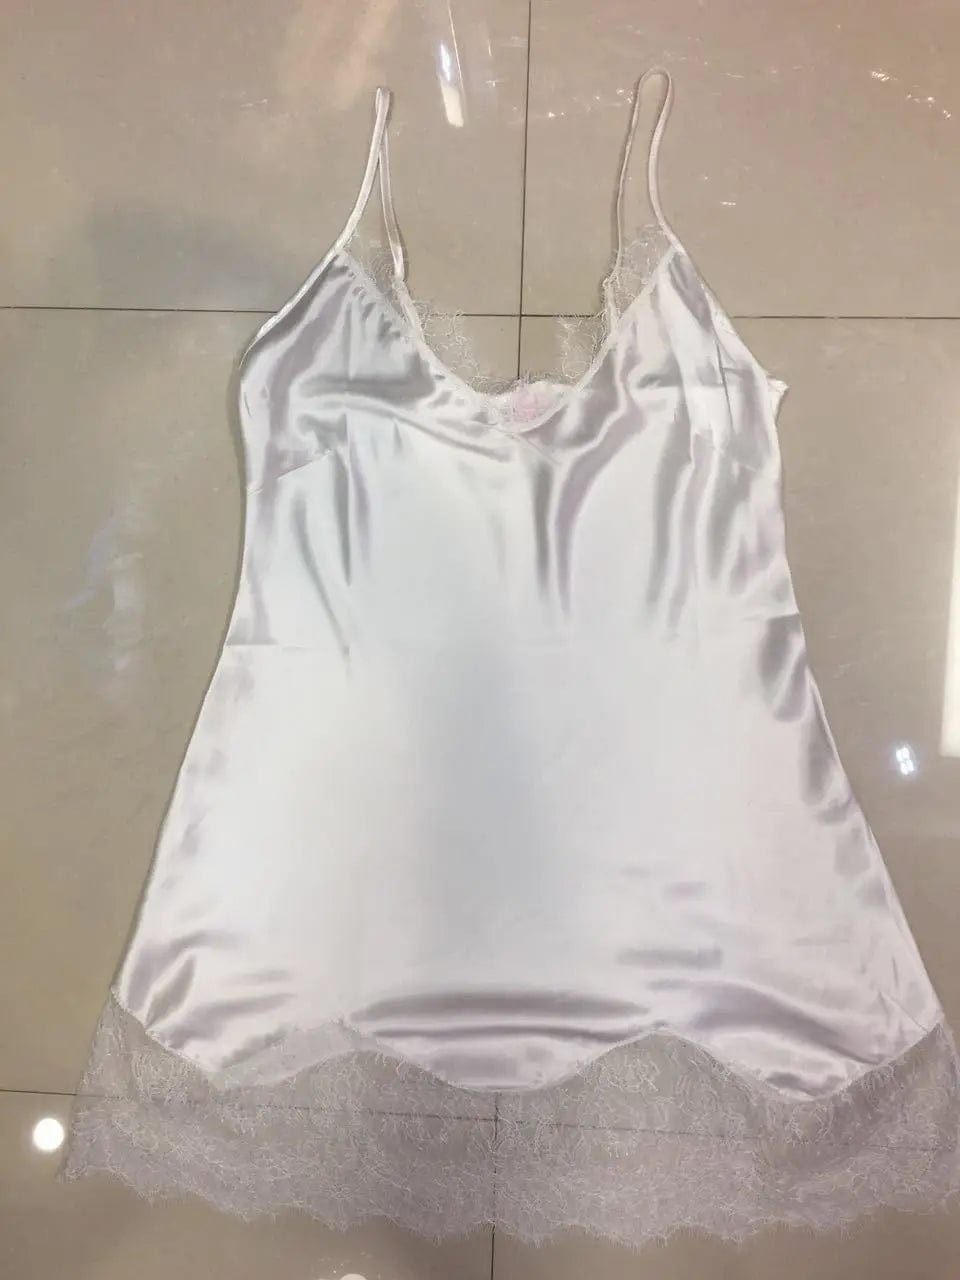 LOVEMI  Nightgown White / One size Lovemi -  Simulation silk stitching lace style sexy nightdress ladies